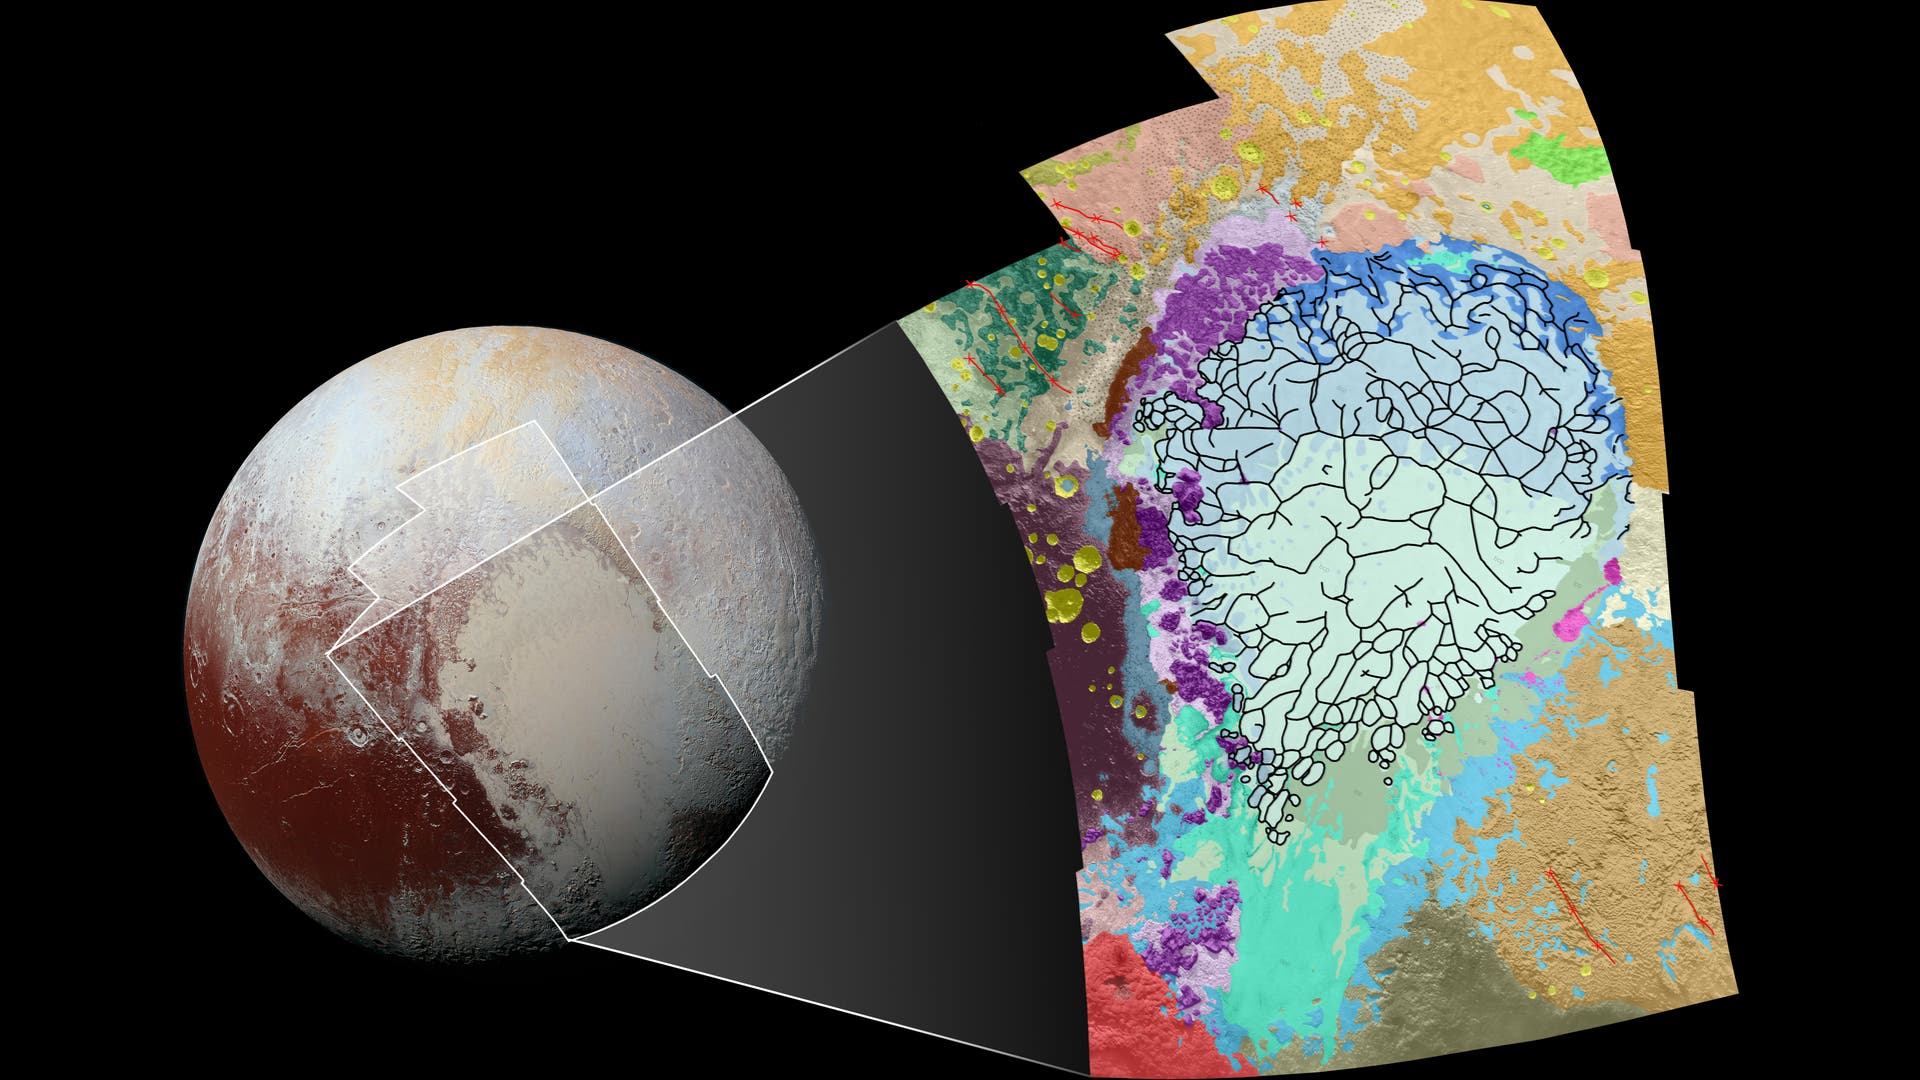 Eine erste geologische Karte der Pluto-Oberfläche (Sputnik Planum)